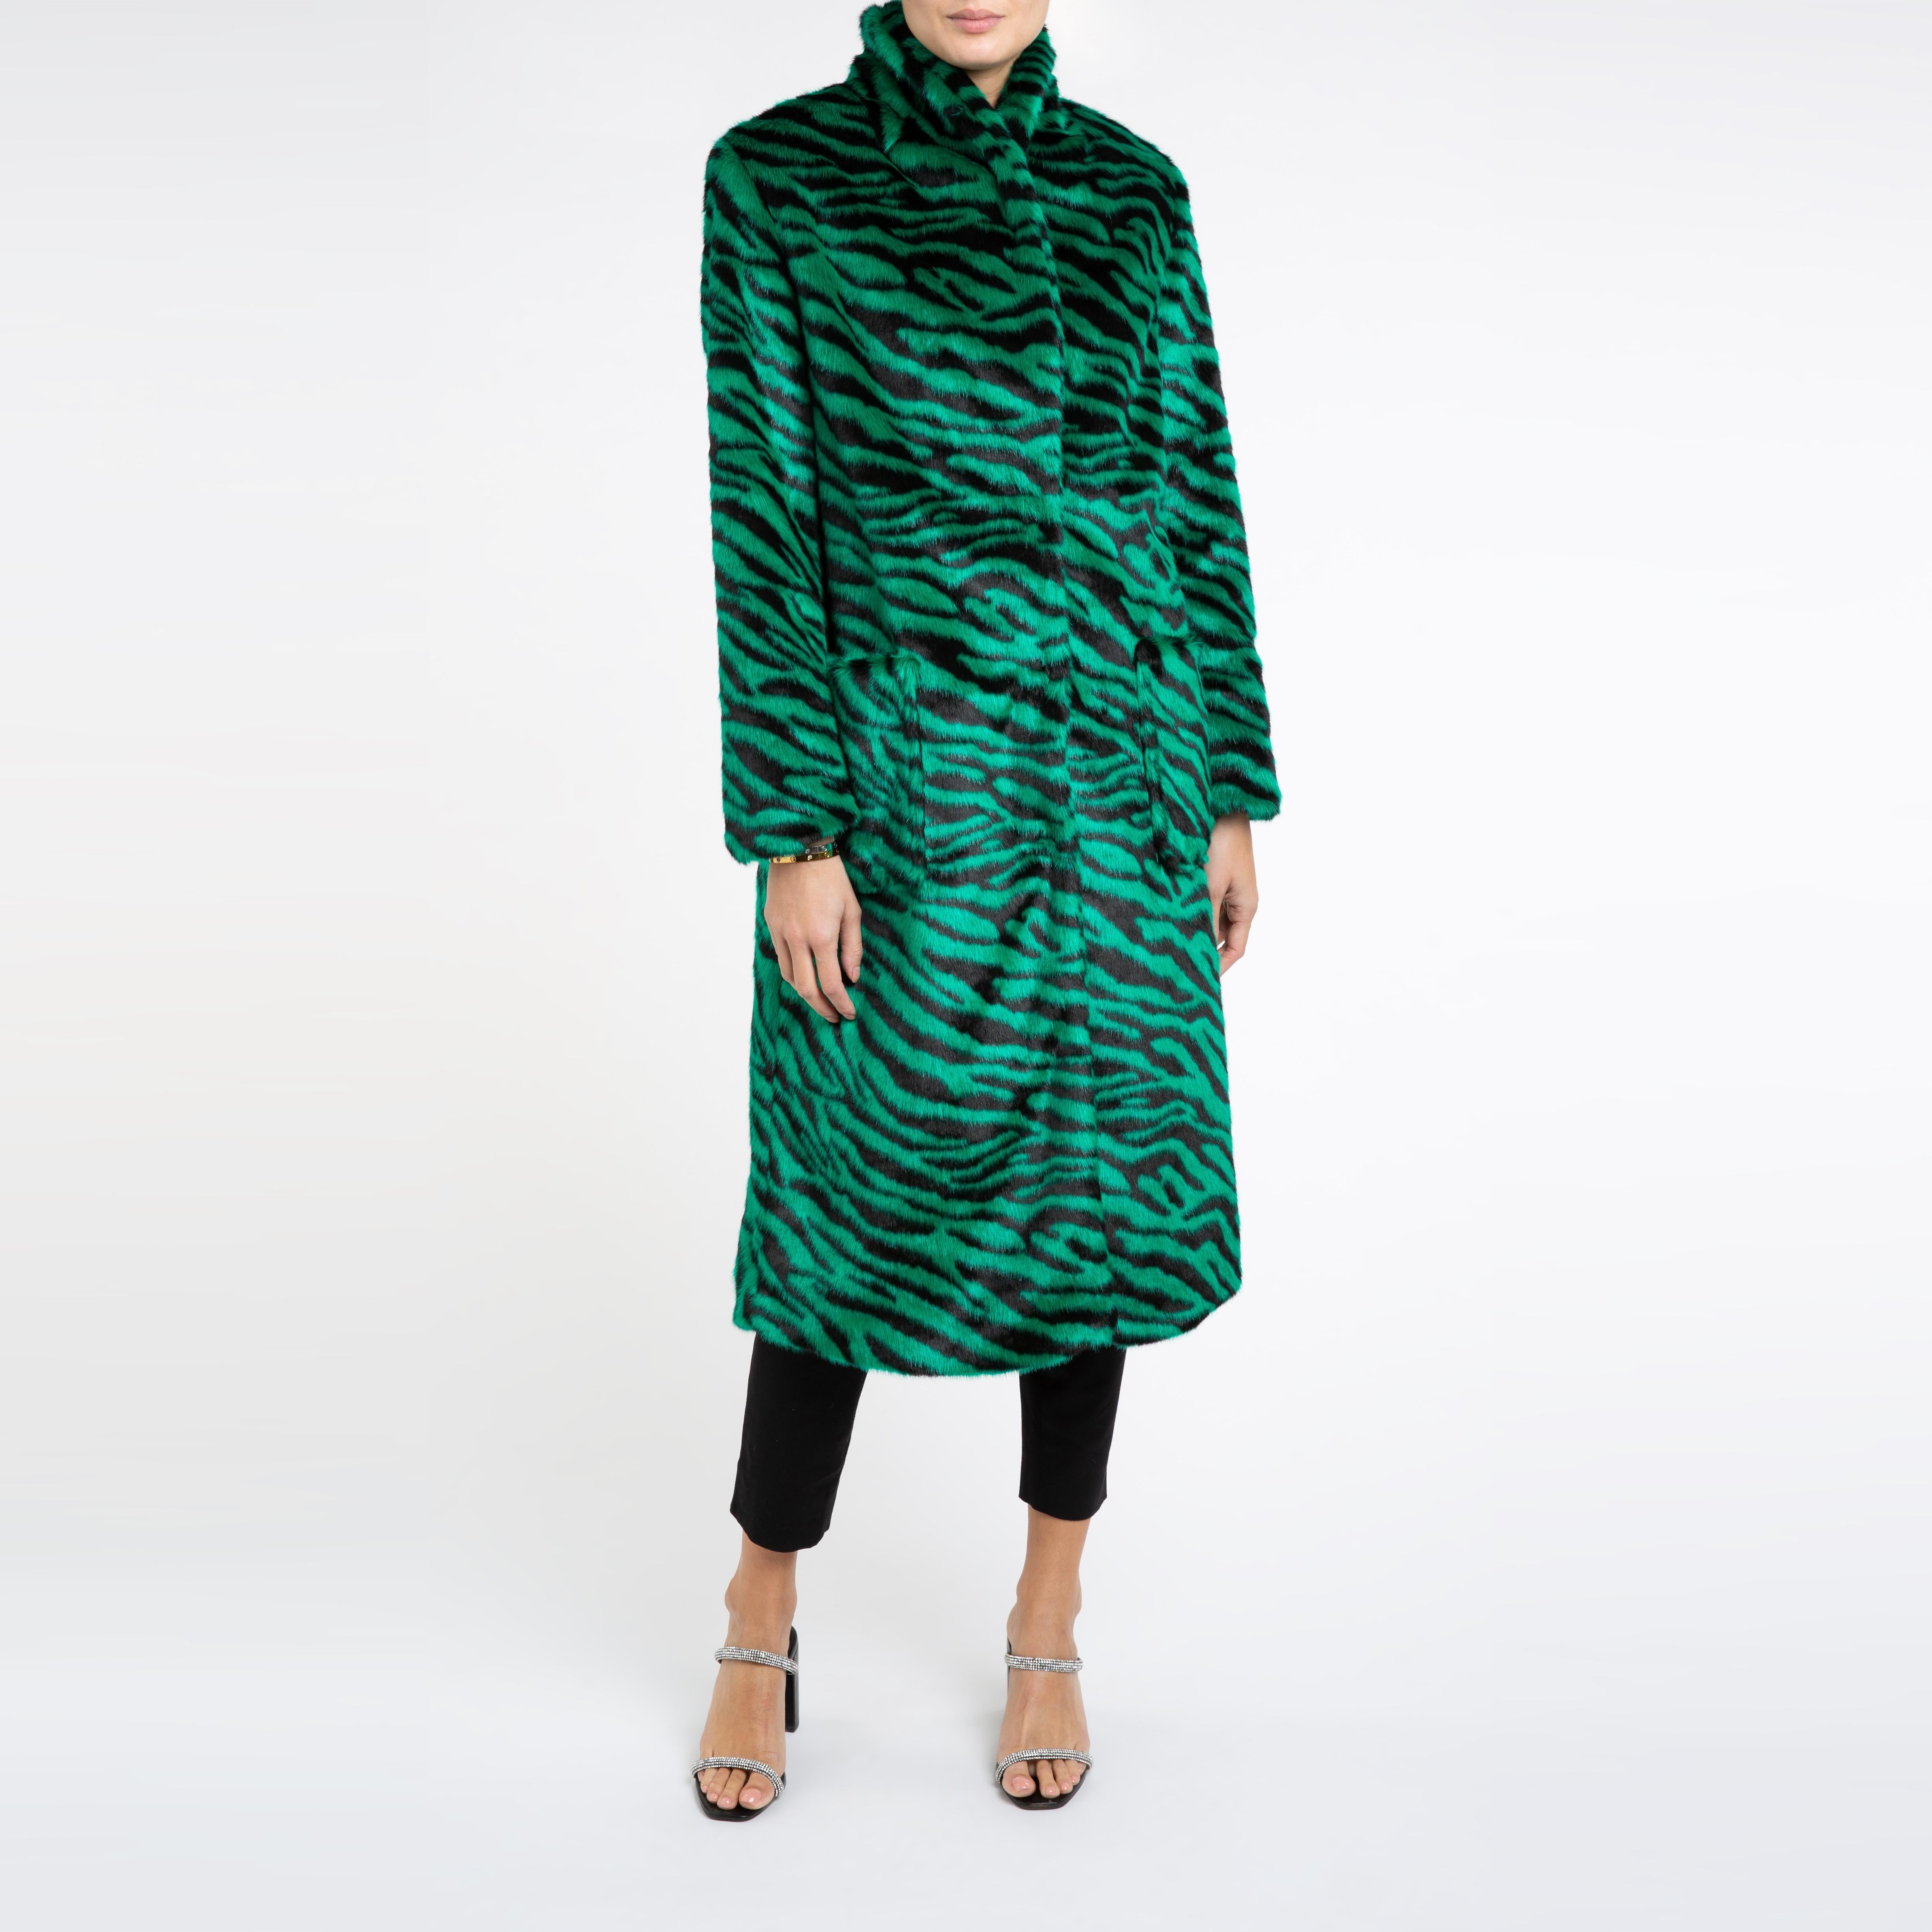 Verheyen London Esmeralda Faux Fur Coat in Emerald Green Zebra Print size uk 10 For Sale 1